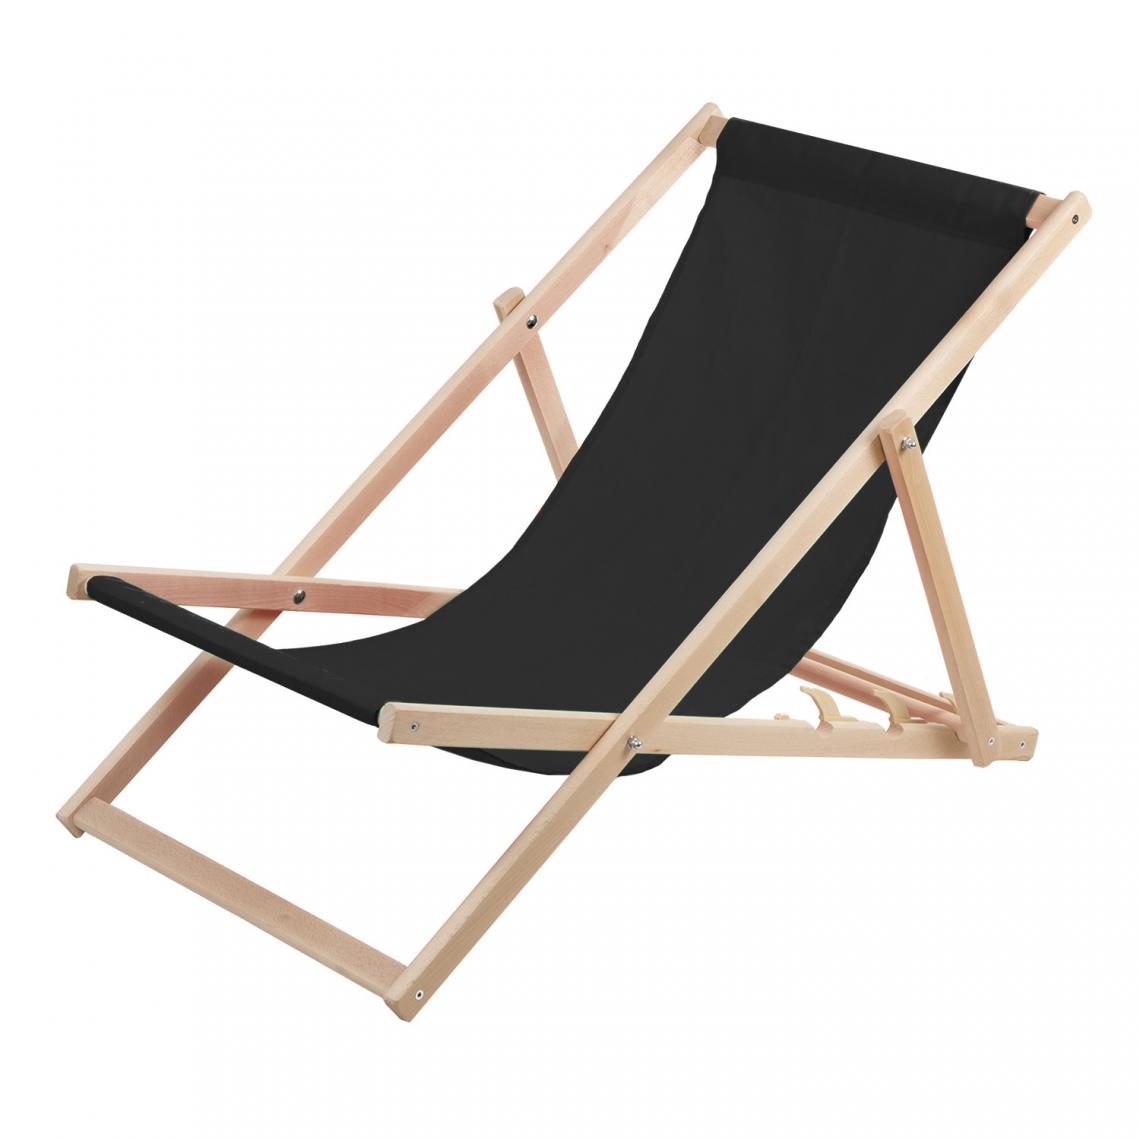 Sans Marque - Chaise longue Wood Ok confortable ,en bois , noir, idéale pour la plage, le balcon, la terrasse - Transats, chaises longues